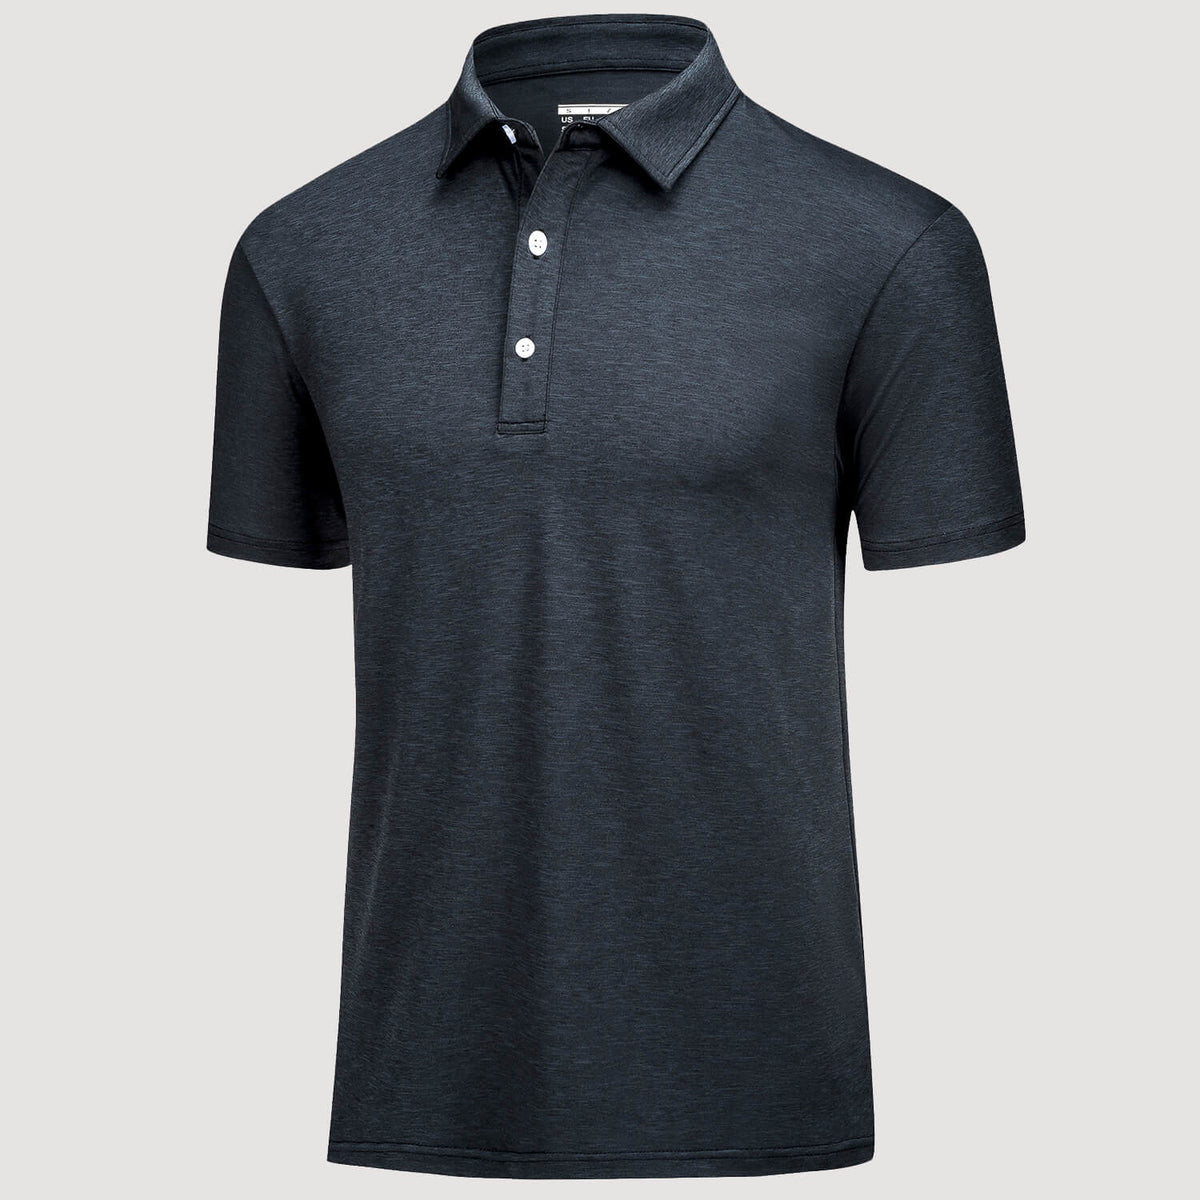 Men's Golf Polo T-Shirts Quick Dry Sports Shirts, Black / M